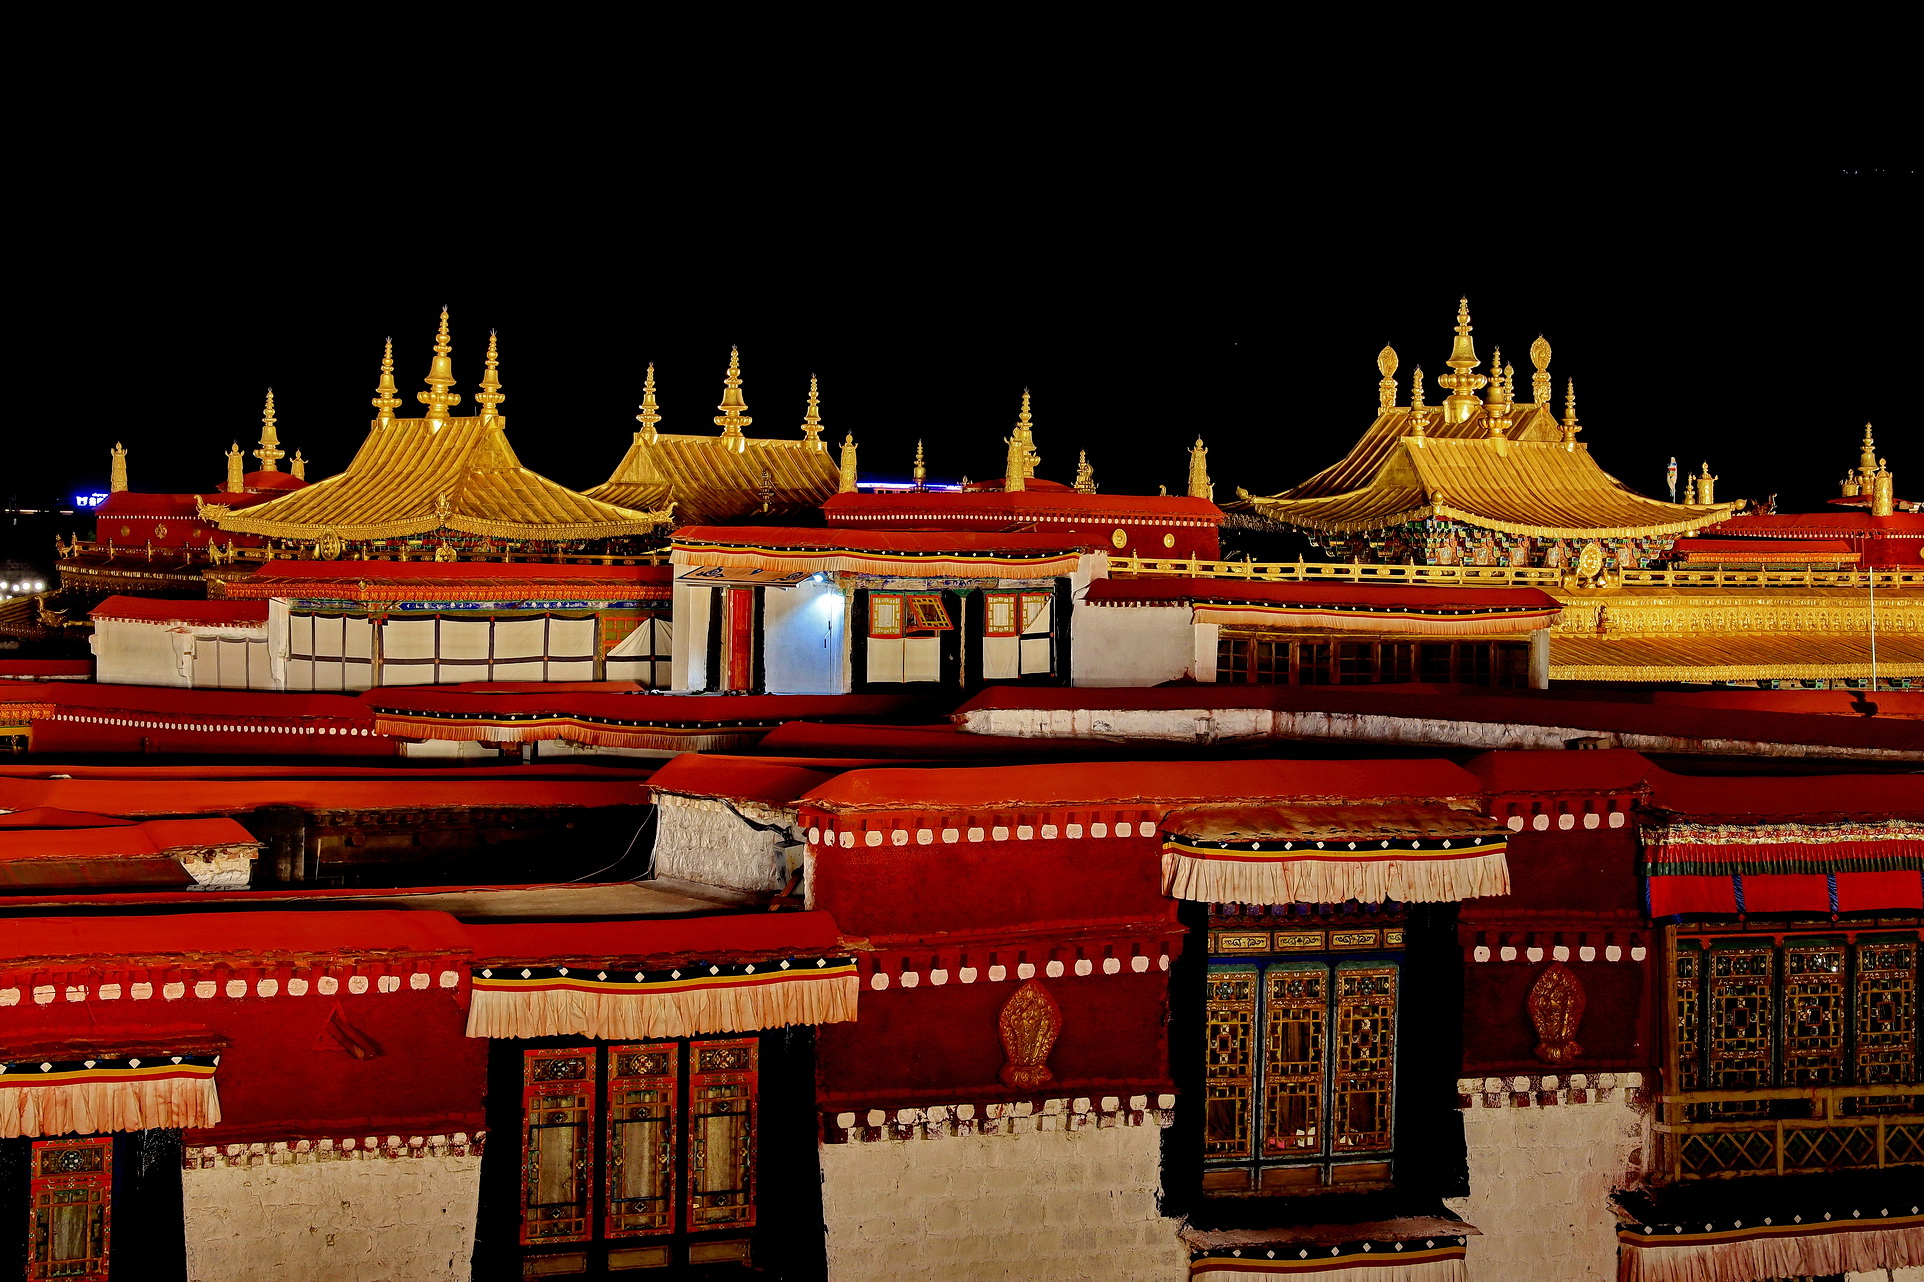 西藏拉萨大昭寺夜景照明项目——2020神灯奖申报工程